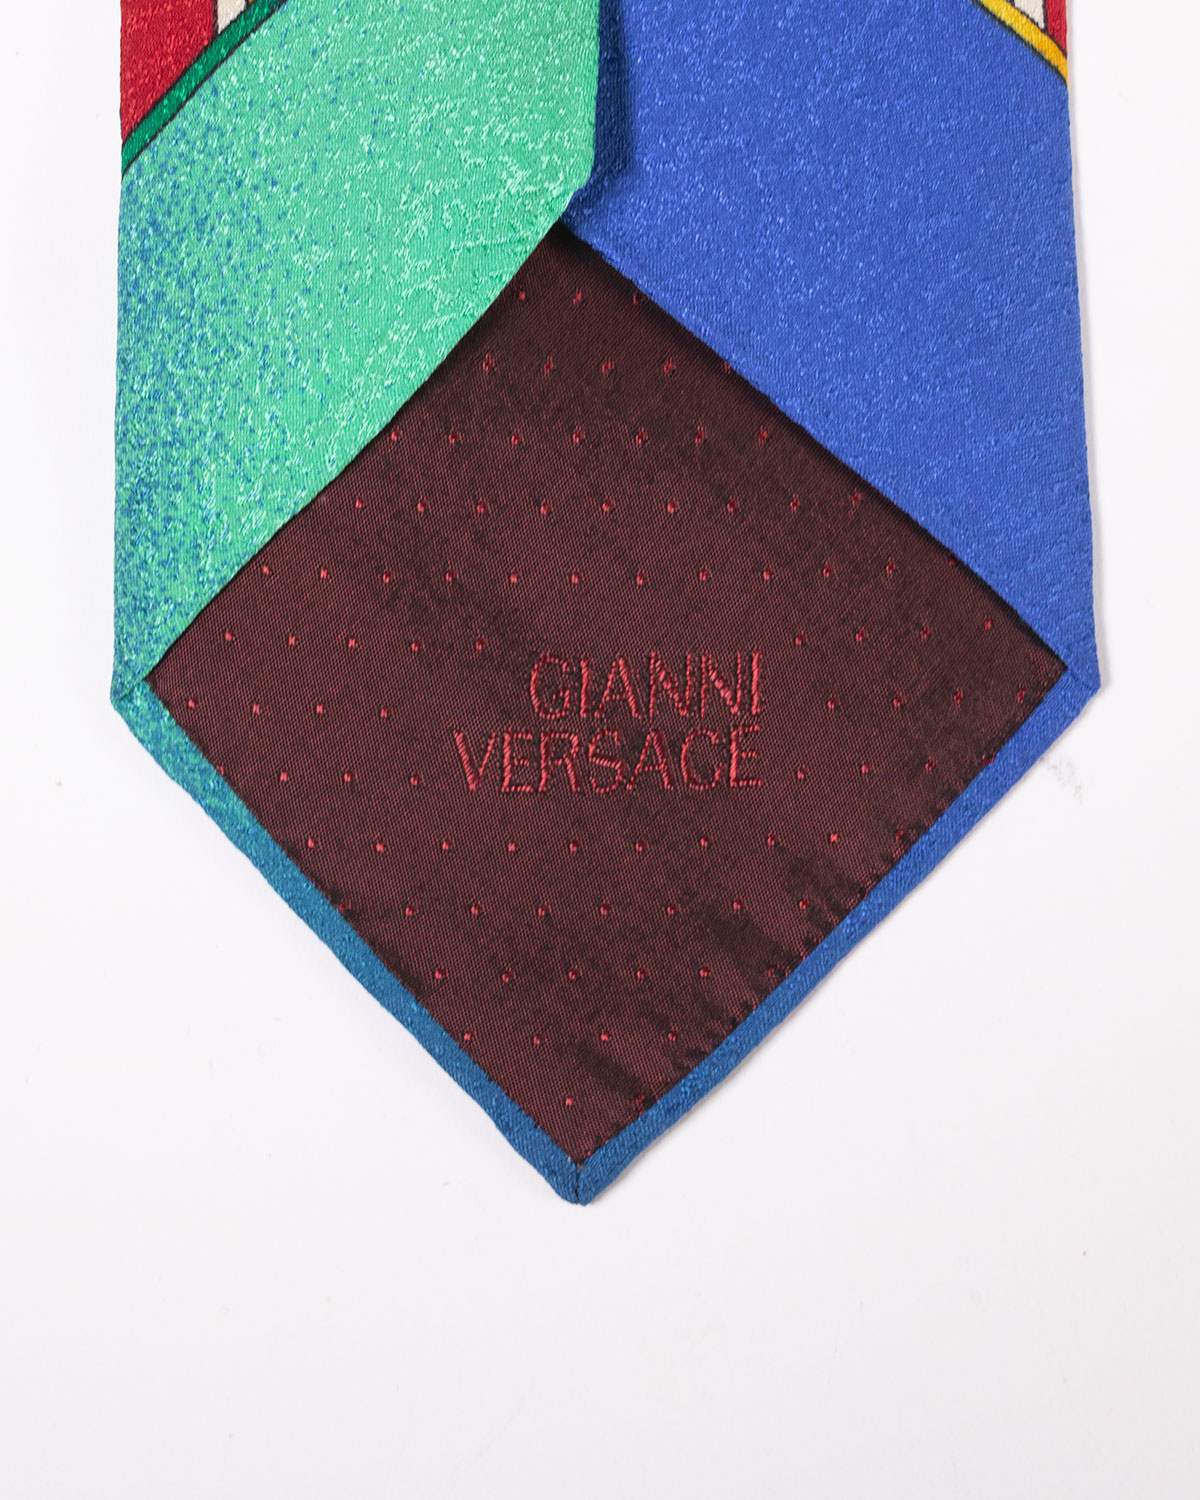 Gianni Versace - 2000s Necktie